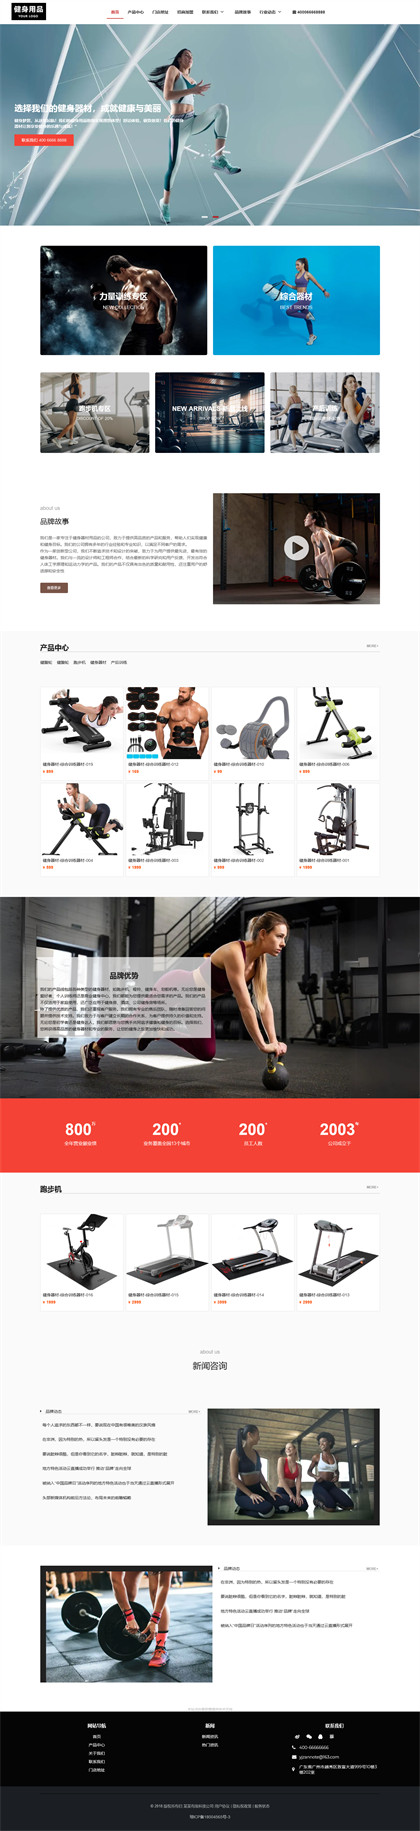 健身器材-健身用品-健身设备-运动用品-运动器材网站模板网站模板预览图片